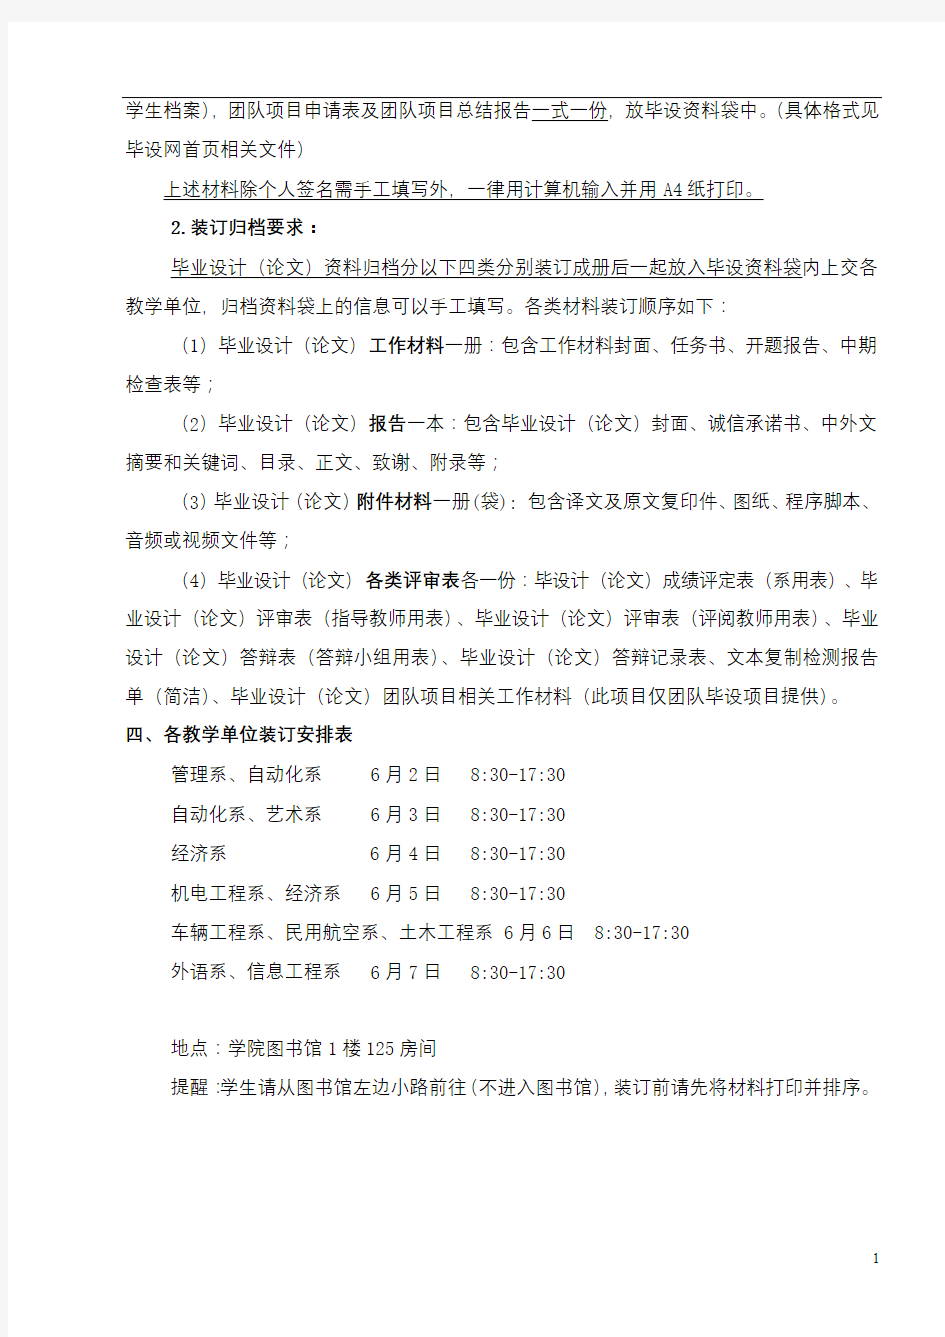 南京航空航天大学金城学院毕业设计(论文)成绩评定表【模板】